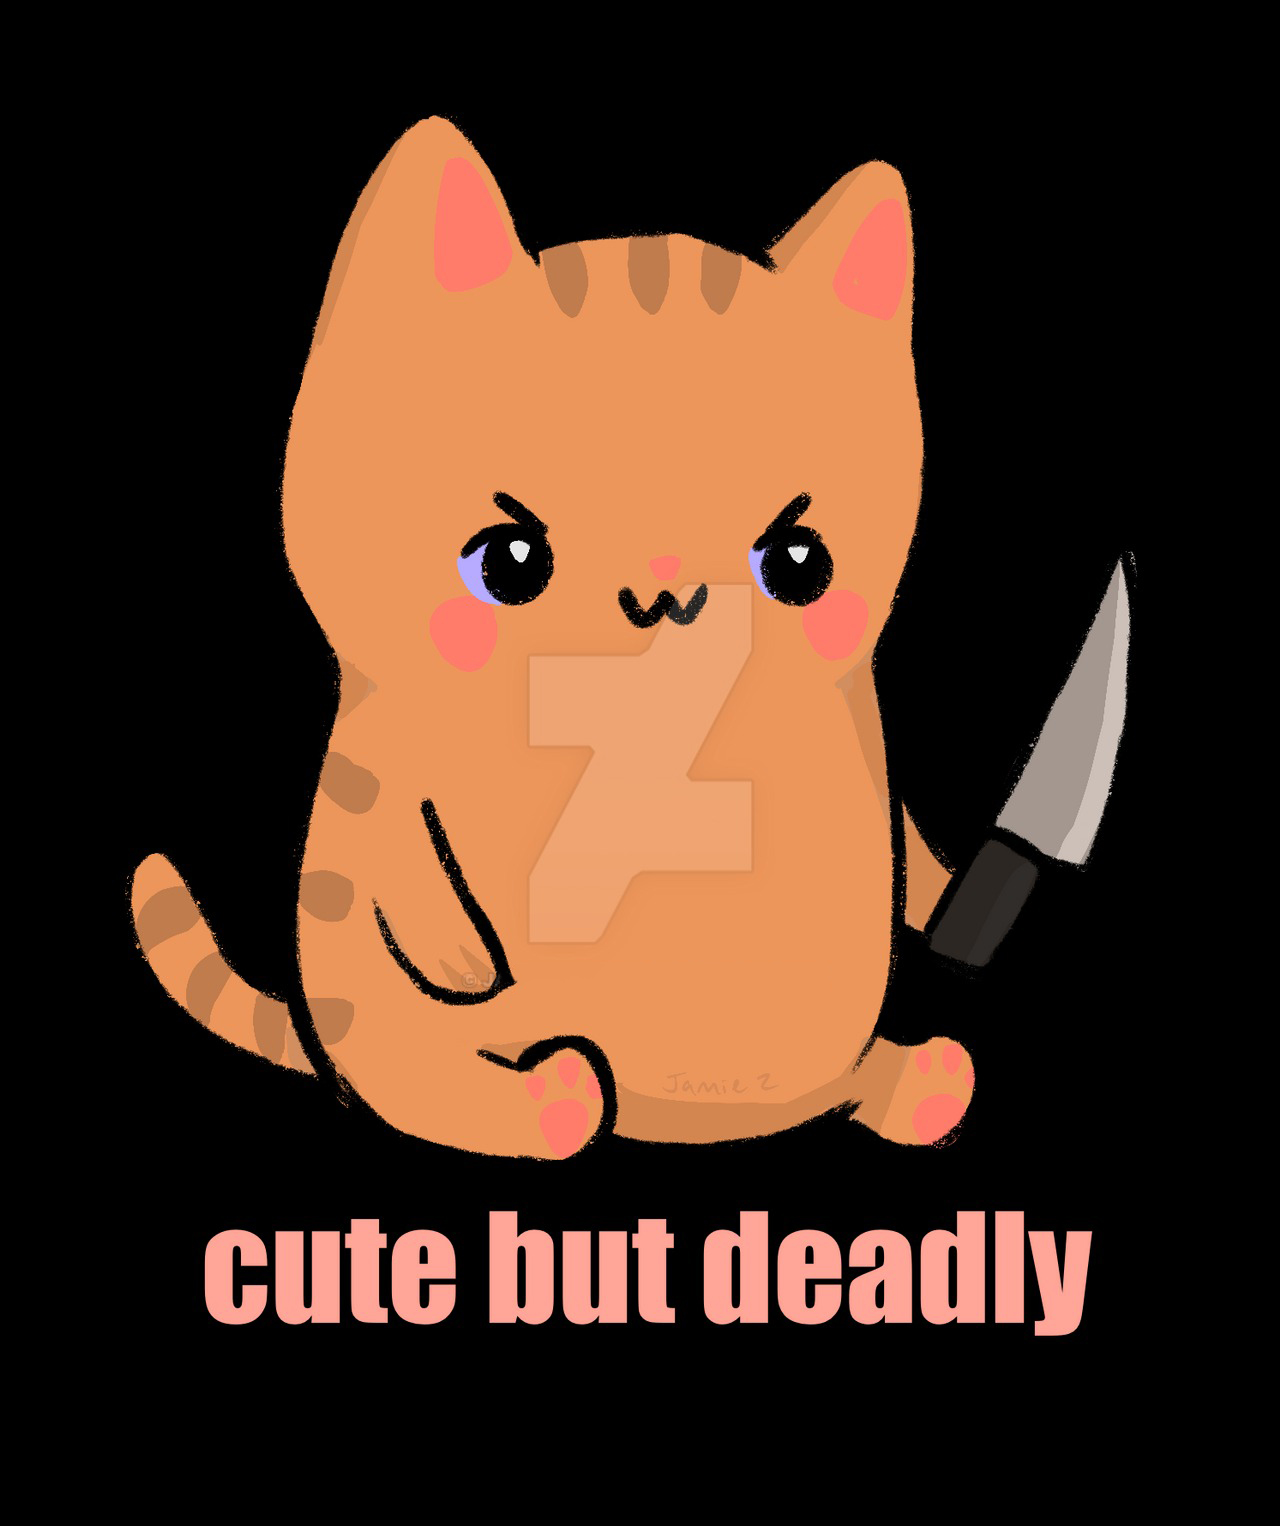 Mèo cầm dao - Biểu tượng hài hước và bá đạo của cộng đồng Internet. Những hình ảnh về mèo cầm dao luôn tạo thêm sự thú vị và phấn khích cho người xem. Hãy thưởng thức những hình ảnh bá đạo này để có những phút giây thư giãn cực kỳ thú vị.